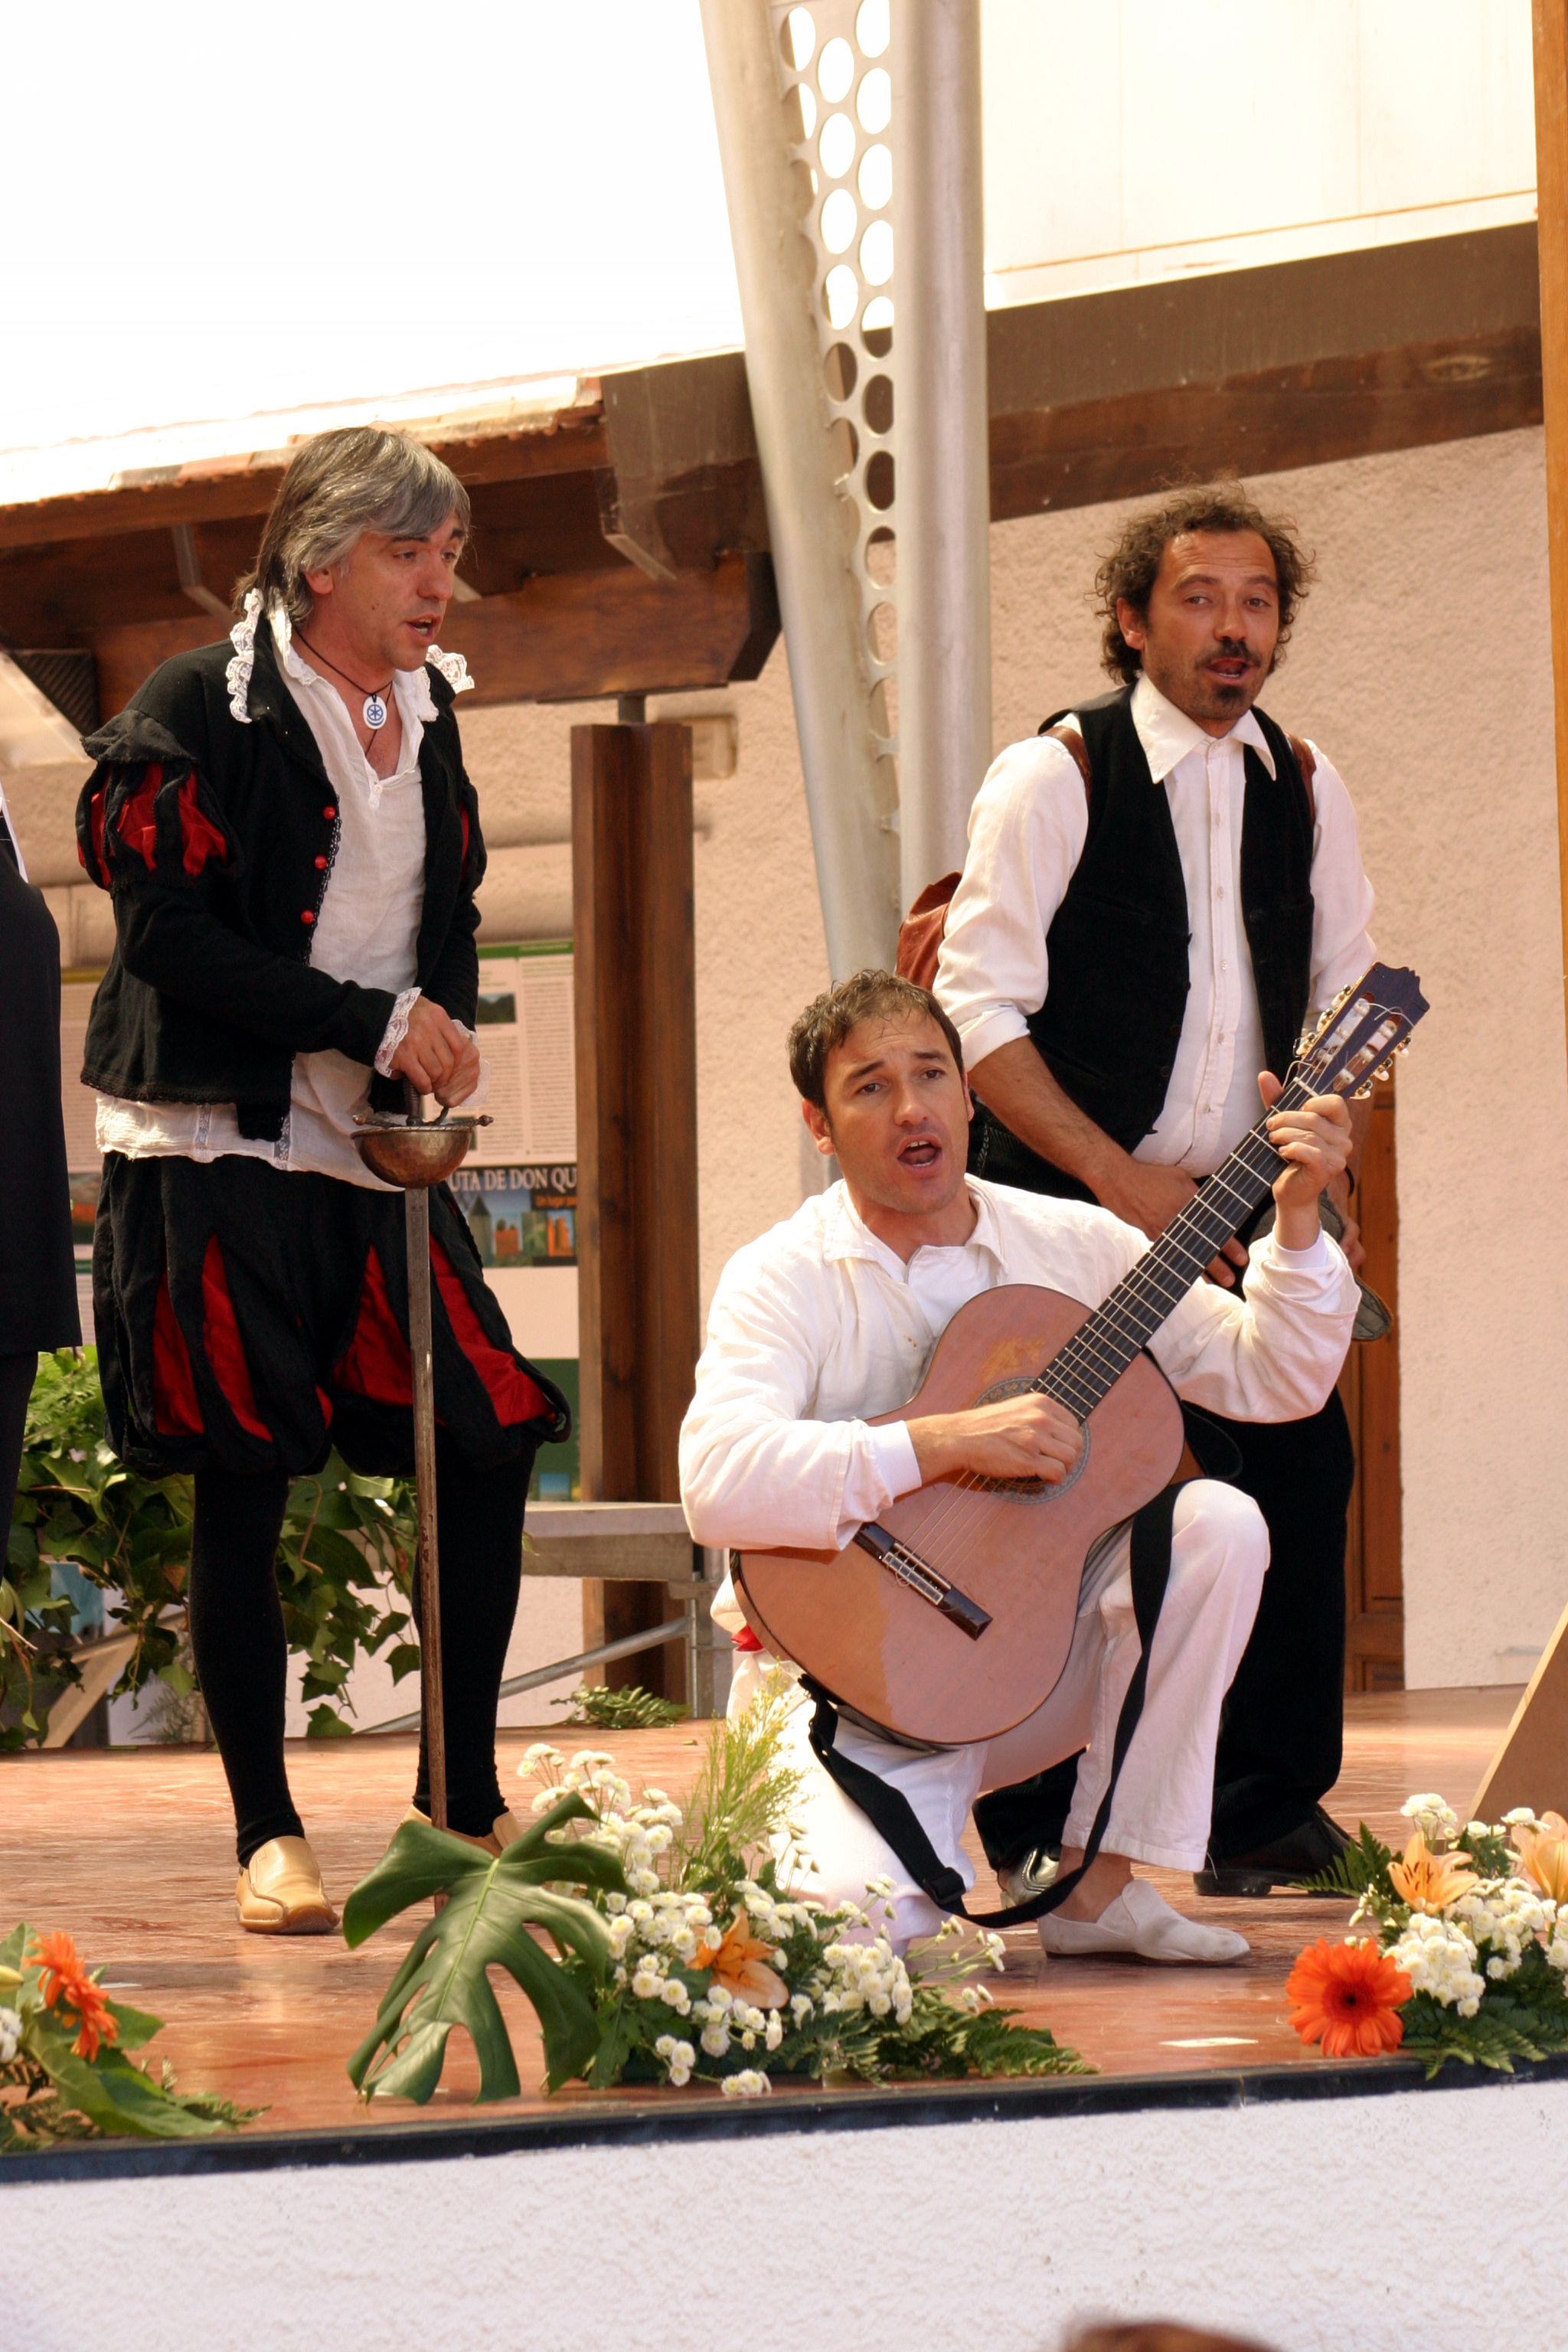 Escena donde aparecen tres hombres disfrazados, el del  medio aparece agachado tocando una guitarra.